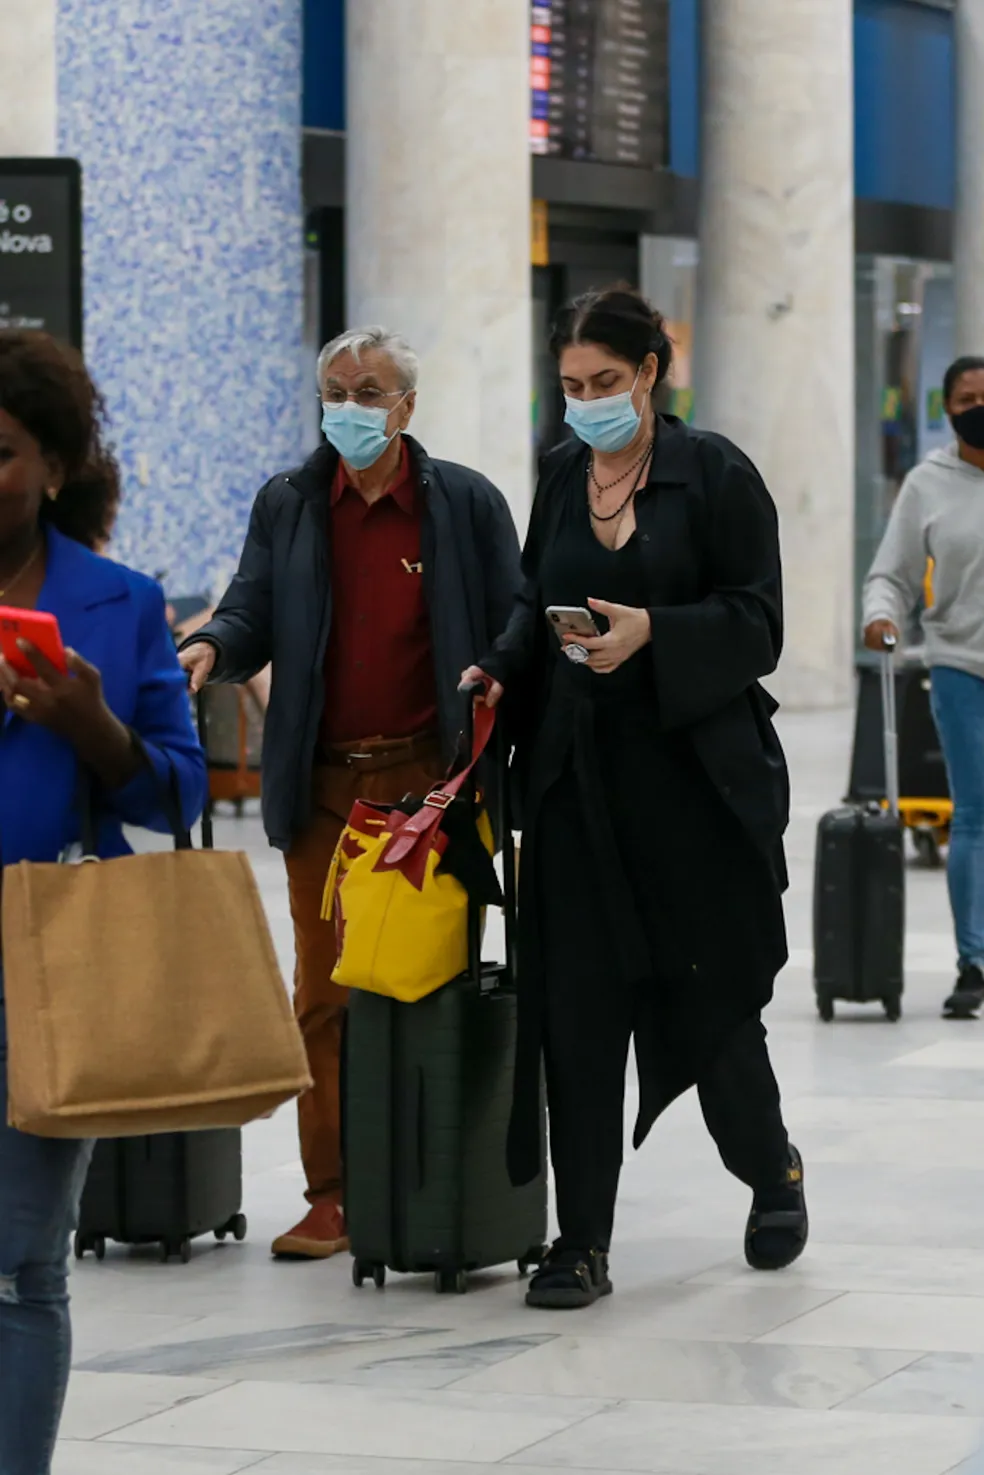 Caetano Veloso aparece com malas nas mãos e máscara de proteção no rosto. Paula Lavigne segura um celular com uma das mãos, enquanto leva as malas na outra